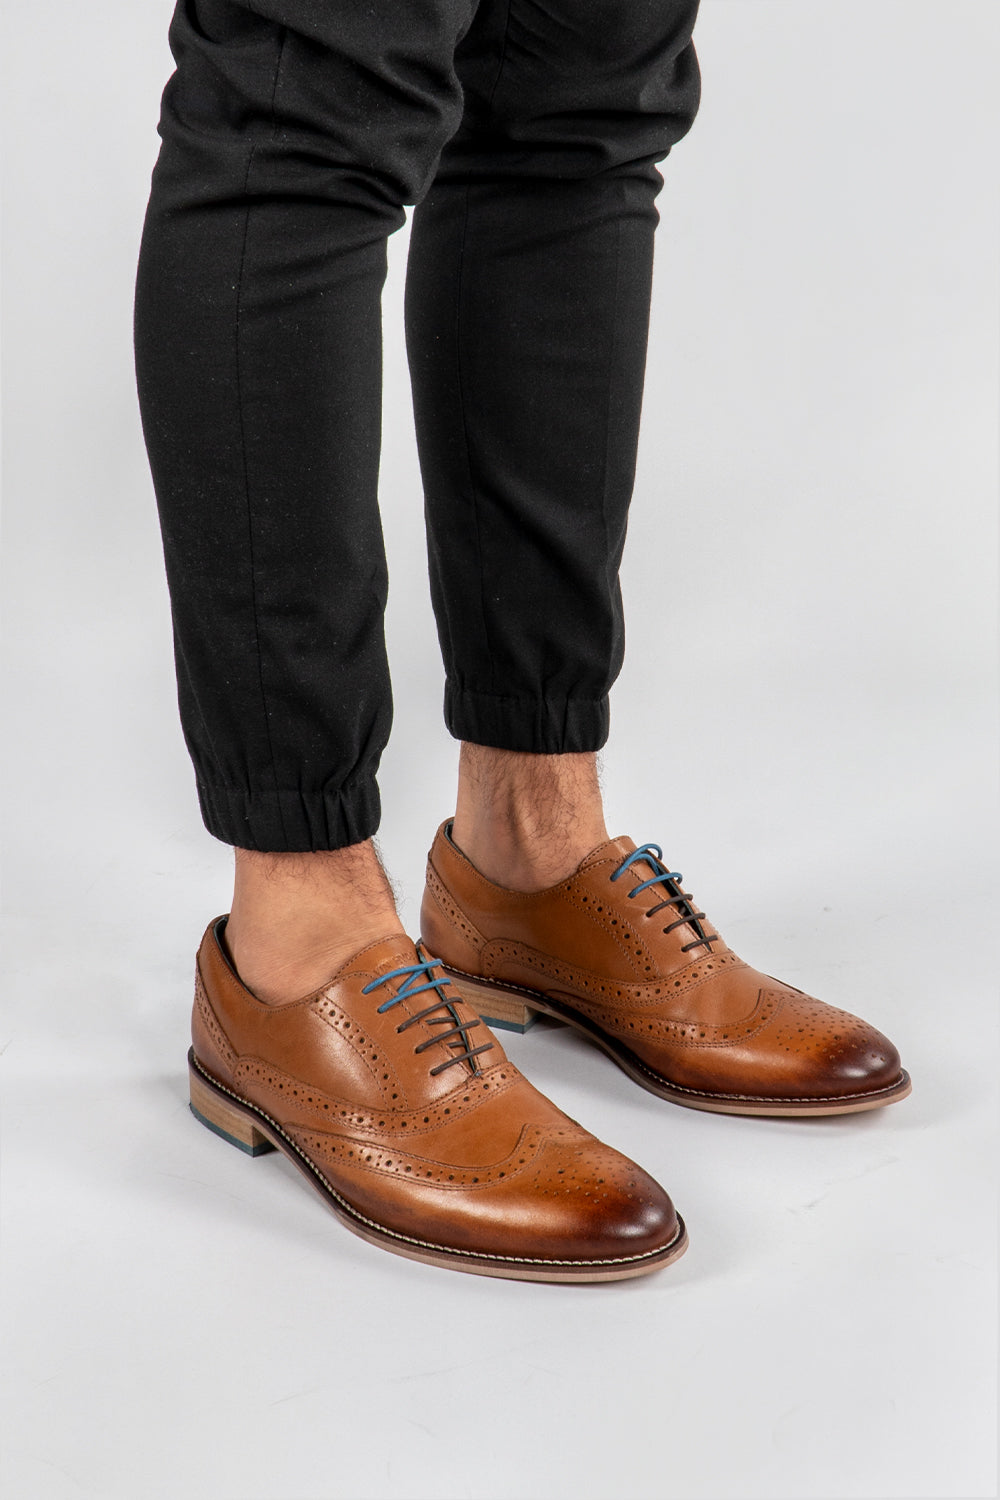 Man wearing tan brogue shoes